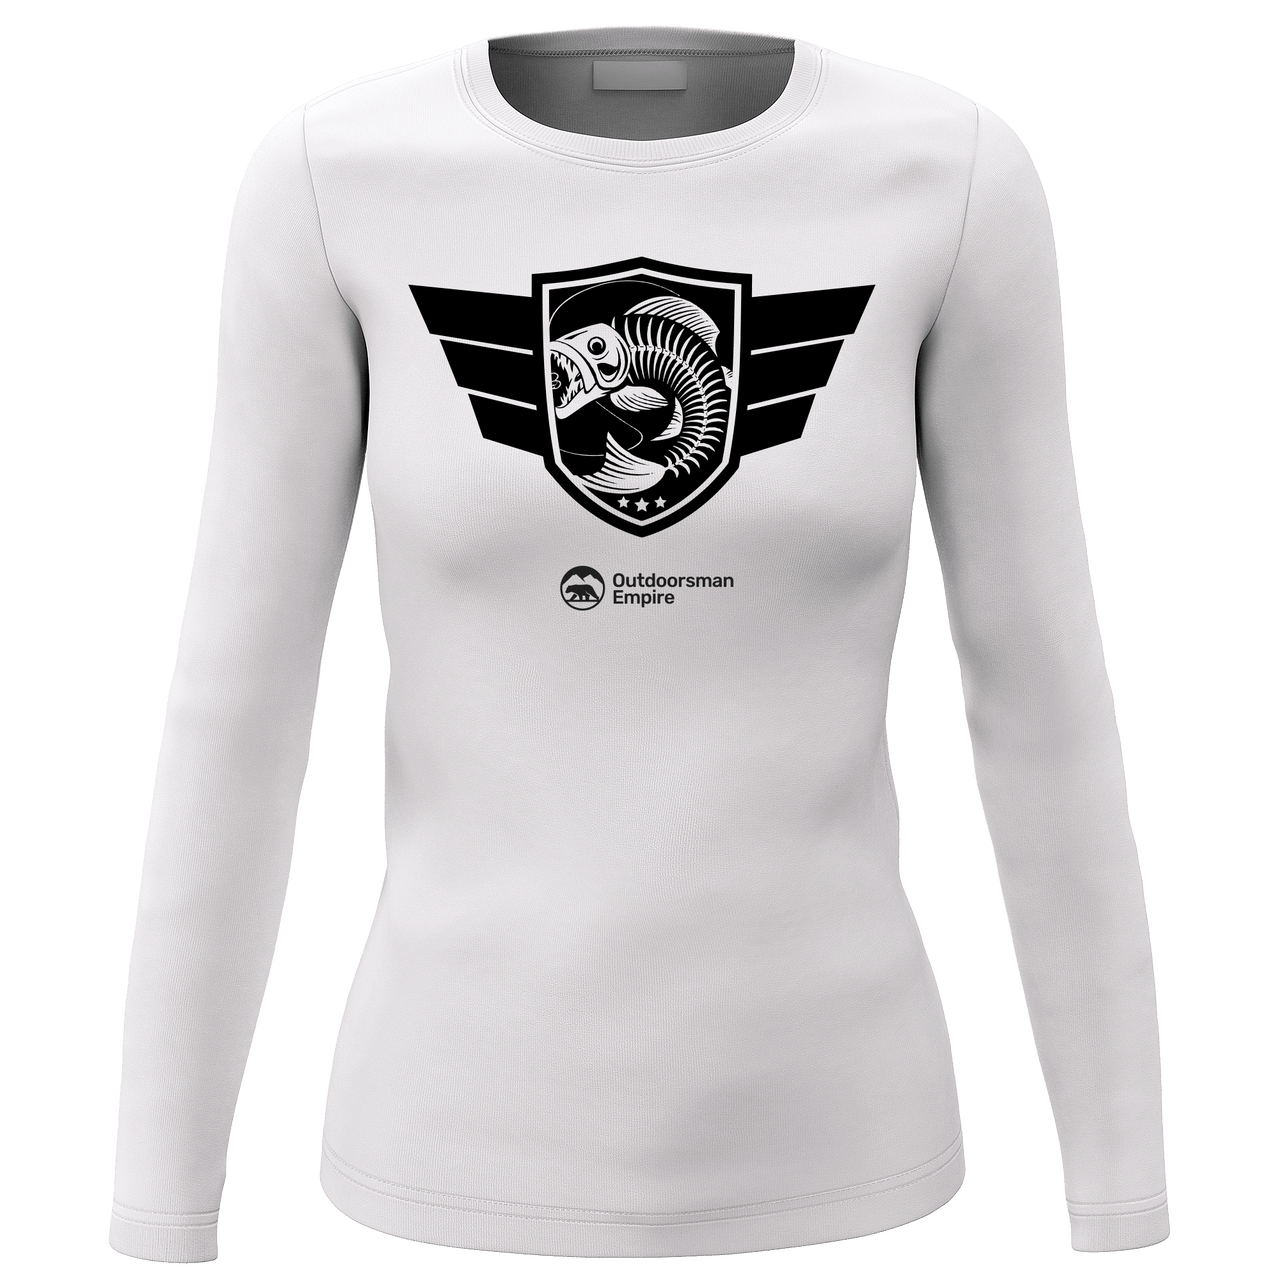 Fishing Air Force Women Long Sleeve Shirt